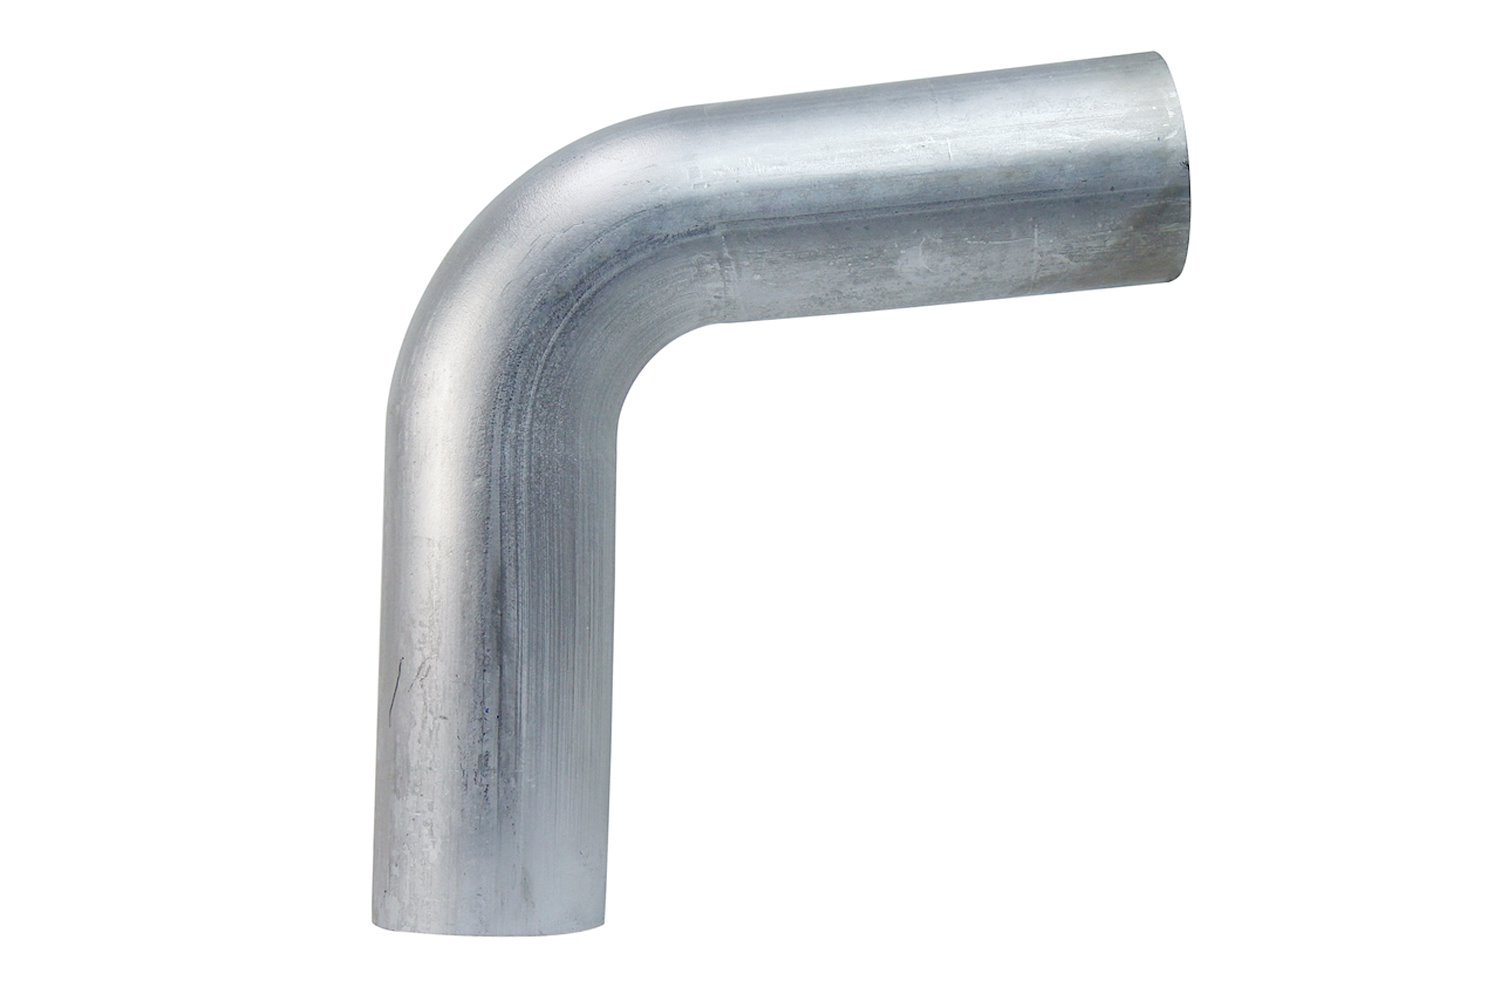 AT80-350-CLR-56 Aluminum Elbow Tube, 6061 Aluminum, 80-Degree Bend Elbow Tubing, 3-1/2 in. OD, Large Radius, 5-5/8 in. CLR